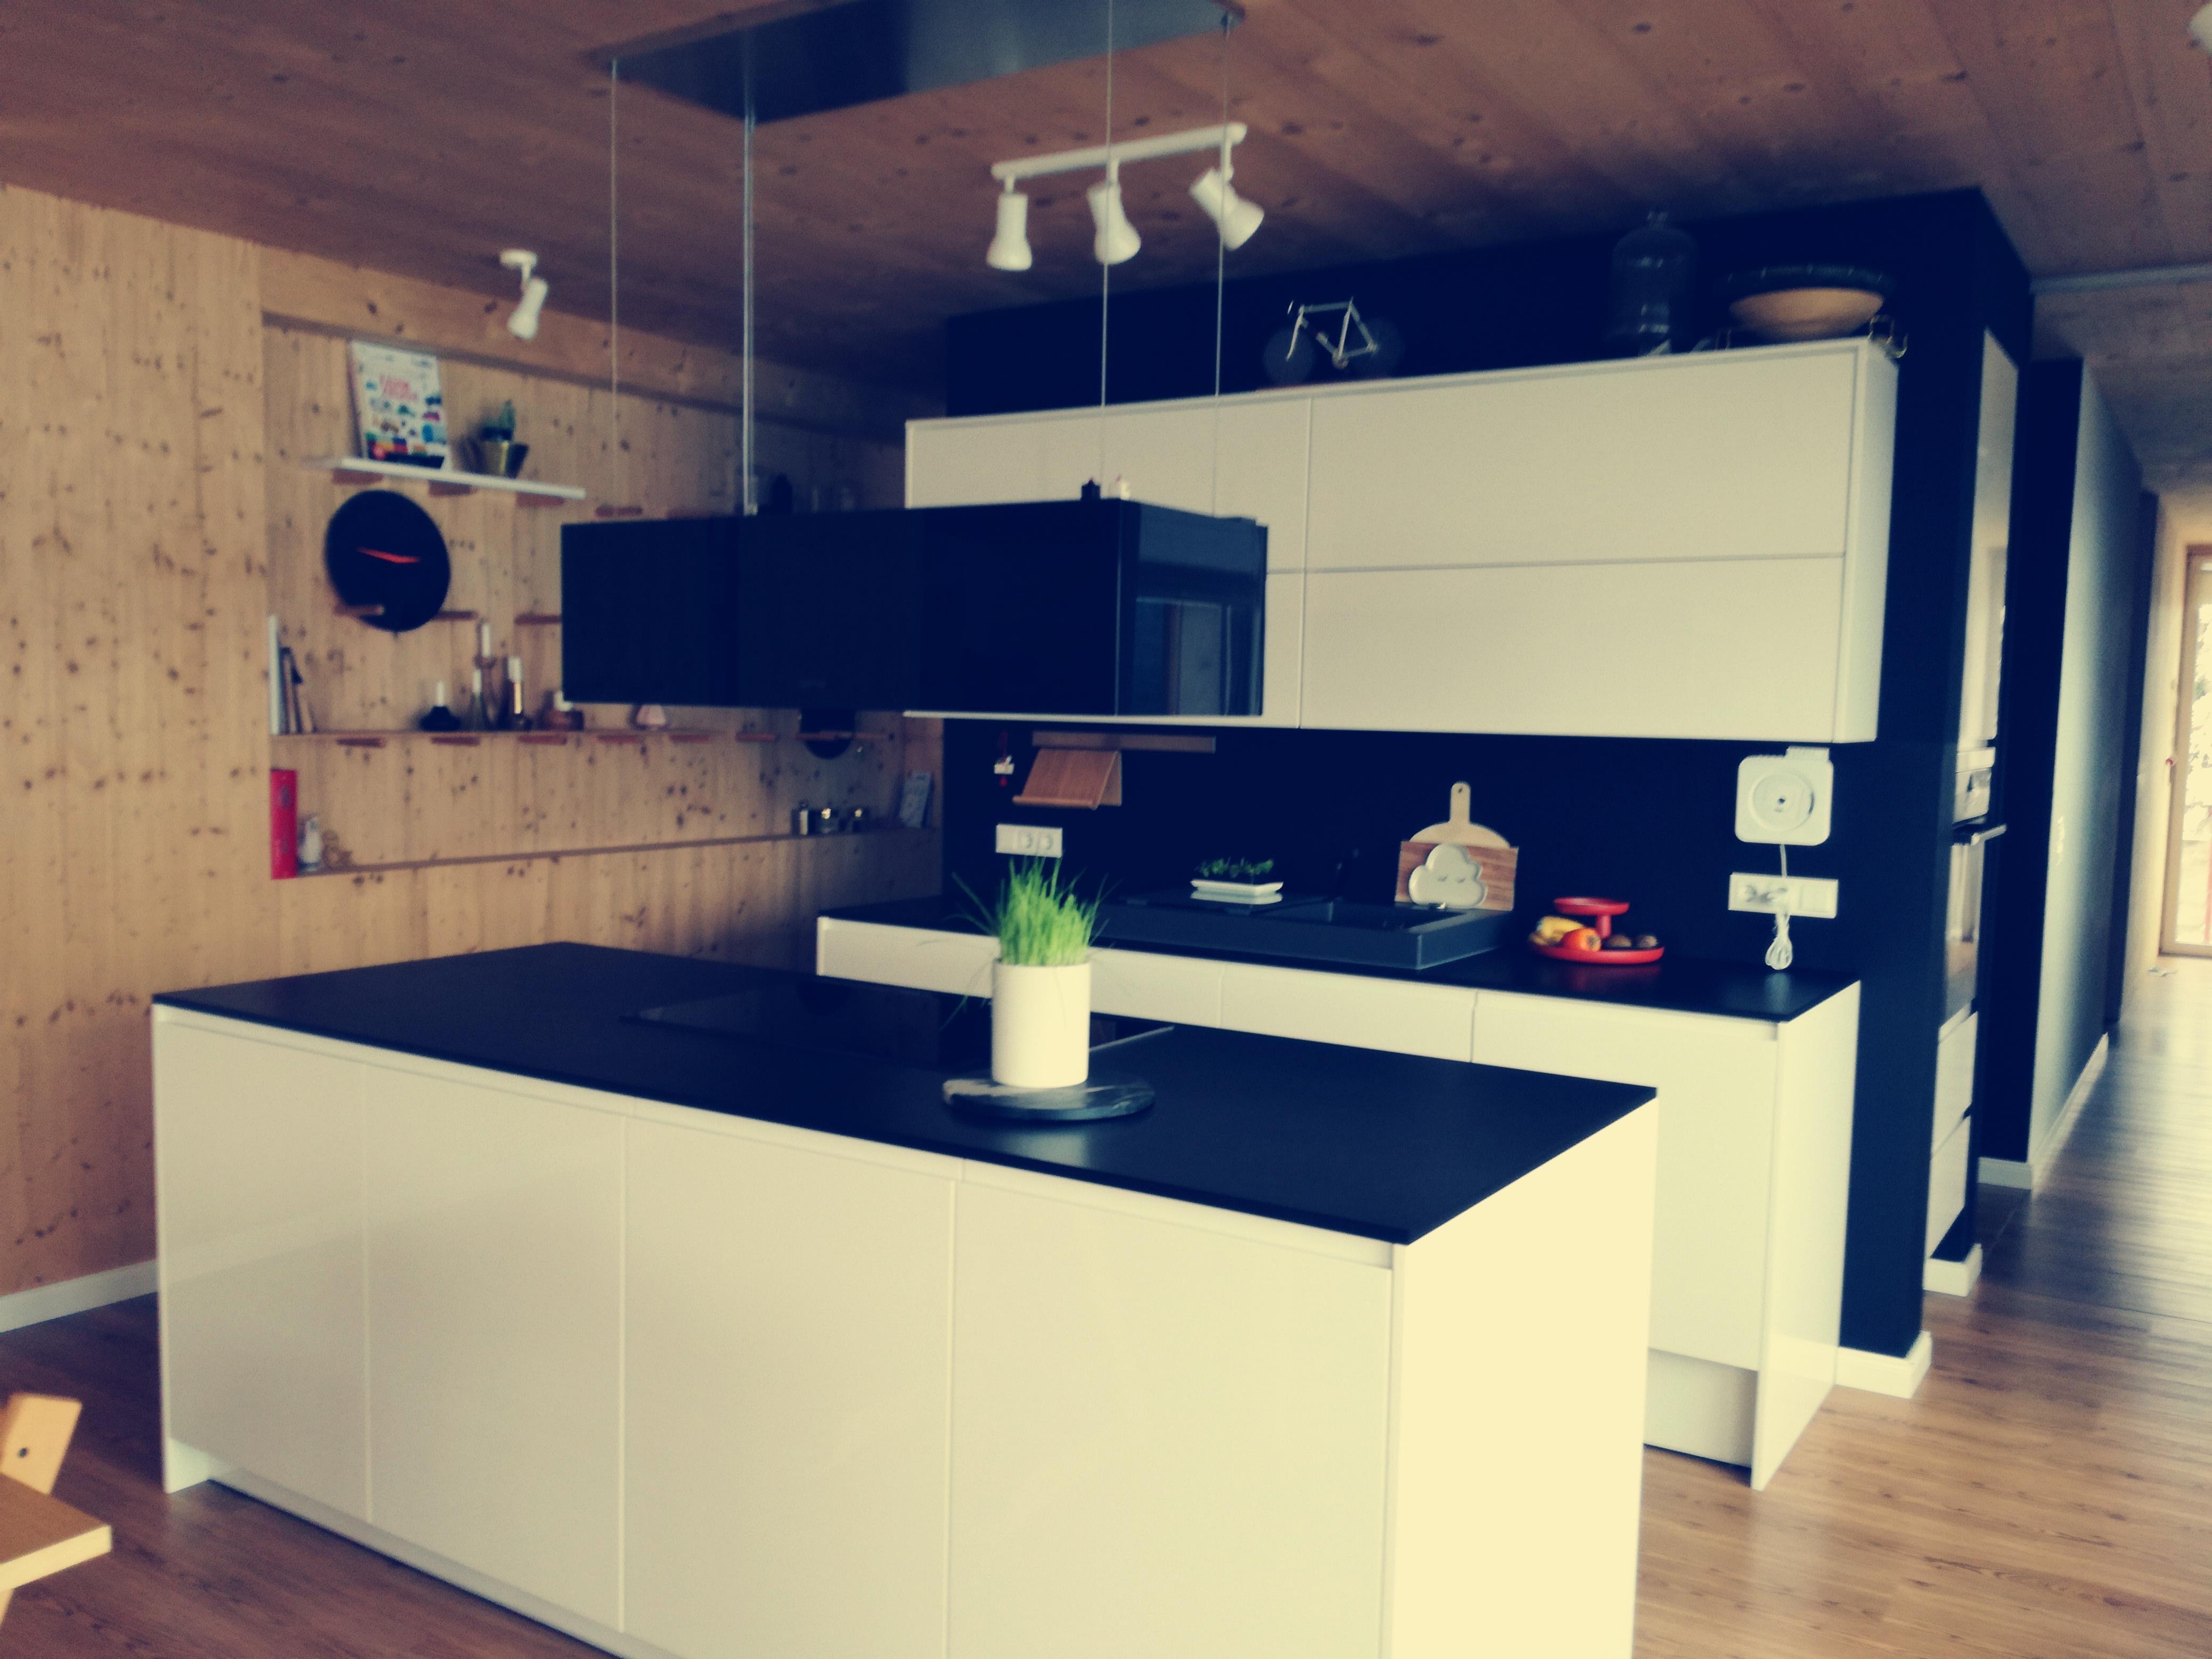 #blackandwhite #monochrome #kitchen #küche #schwarzweiß #hochglanz #plywood #handmade #itsimpleme #berbel #vitra 